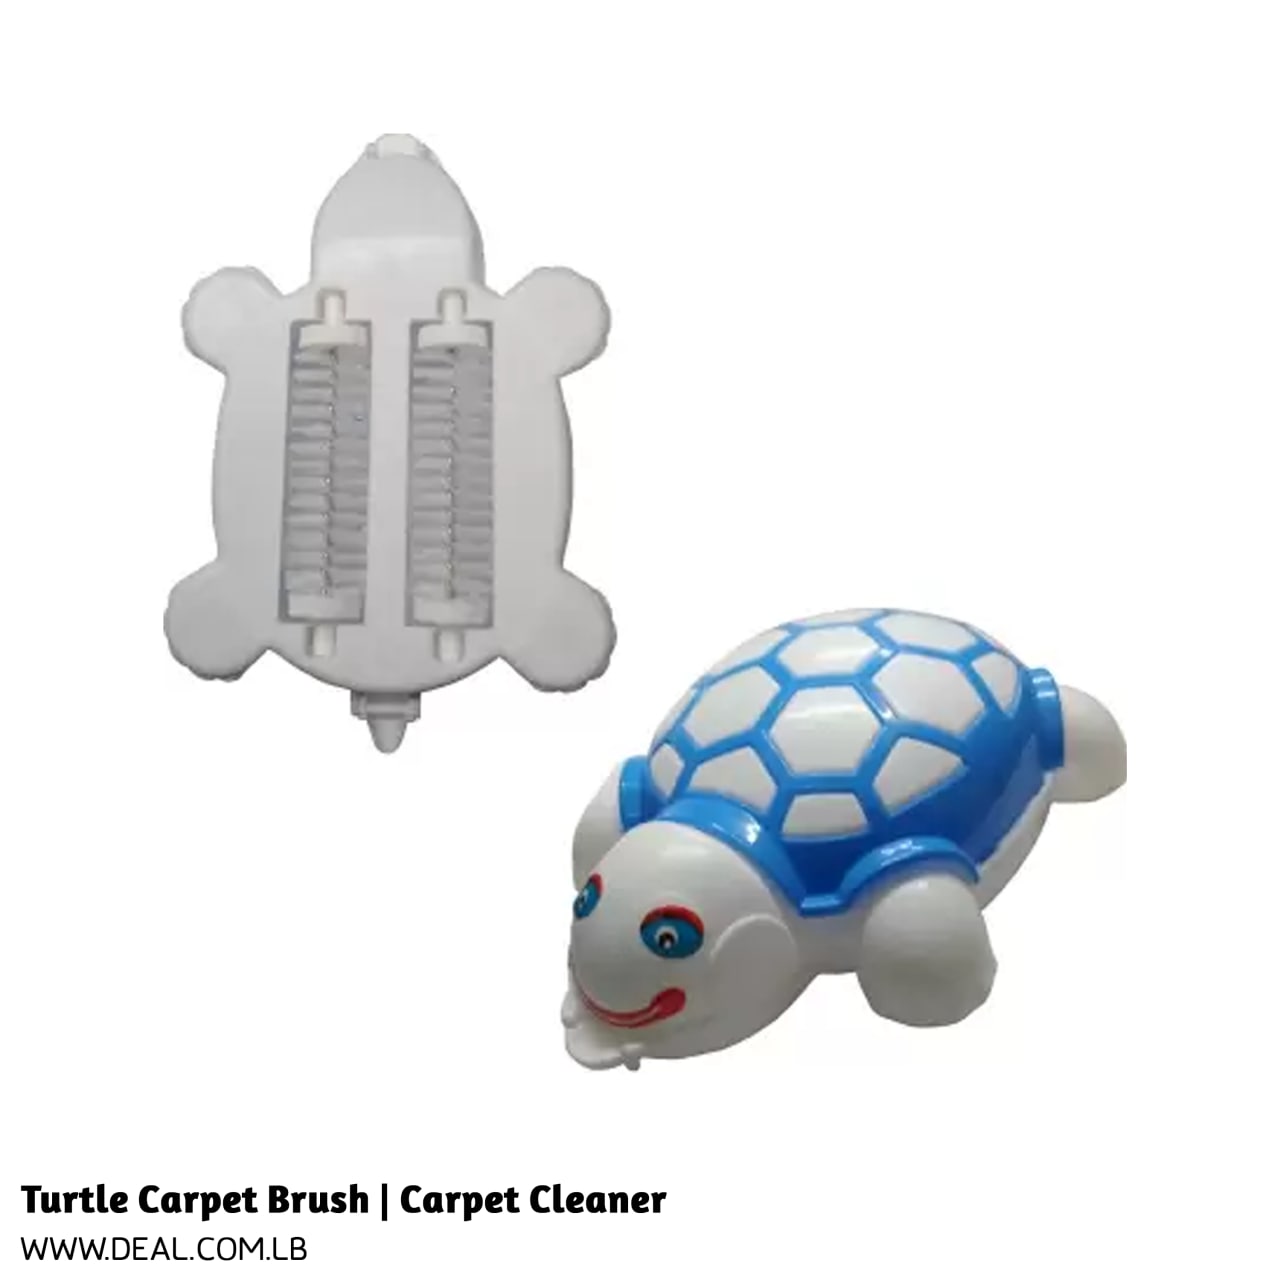 Turtle Carpet Brush | Carpet Cleaner